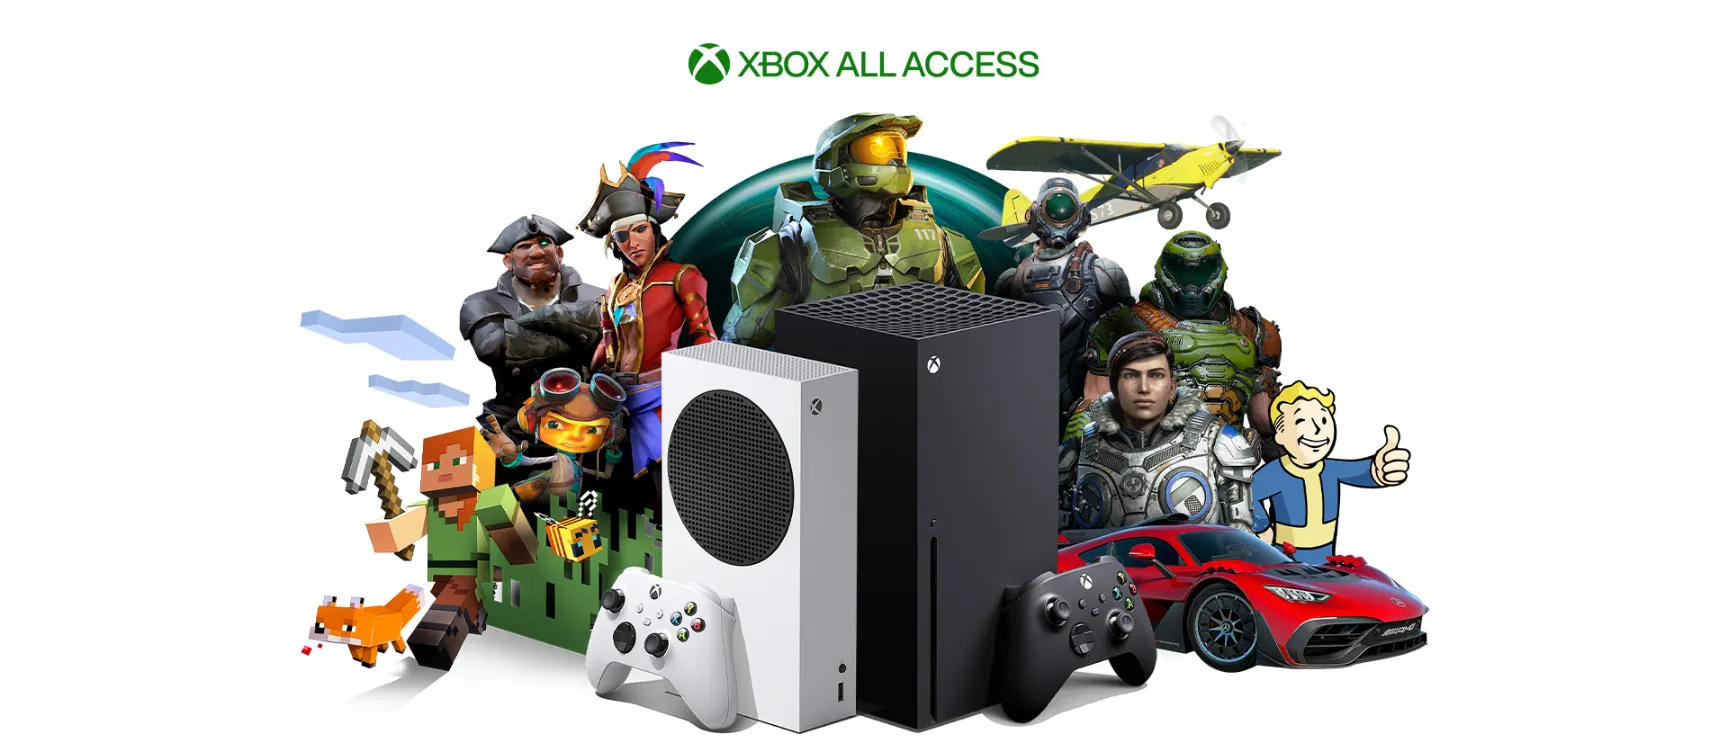 Grafika przedstawiająca konsole Xbox i postaci z gier. Xbox Game Pass